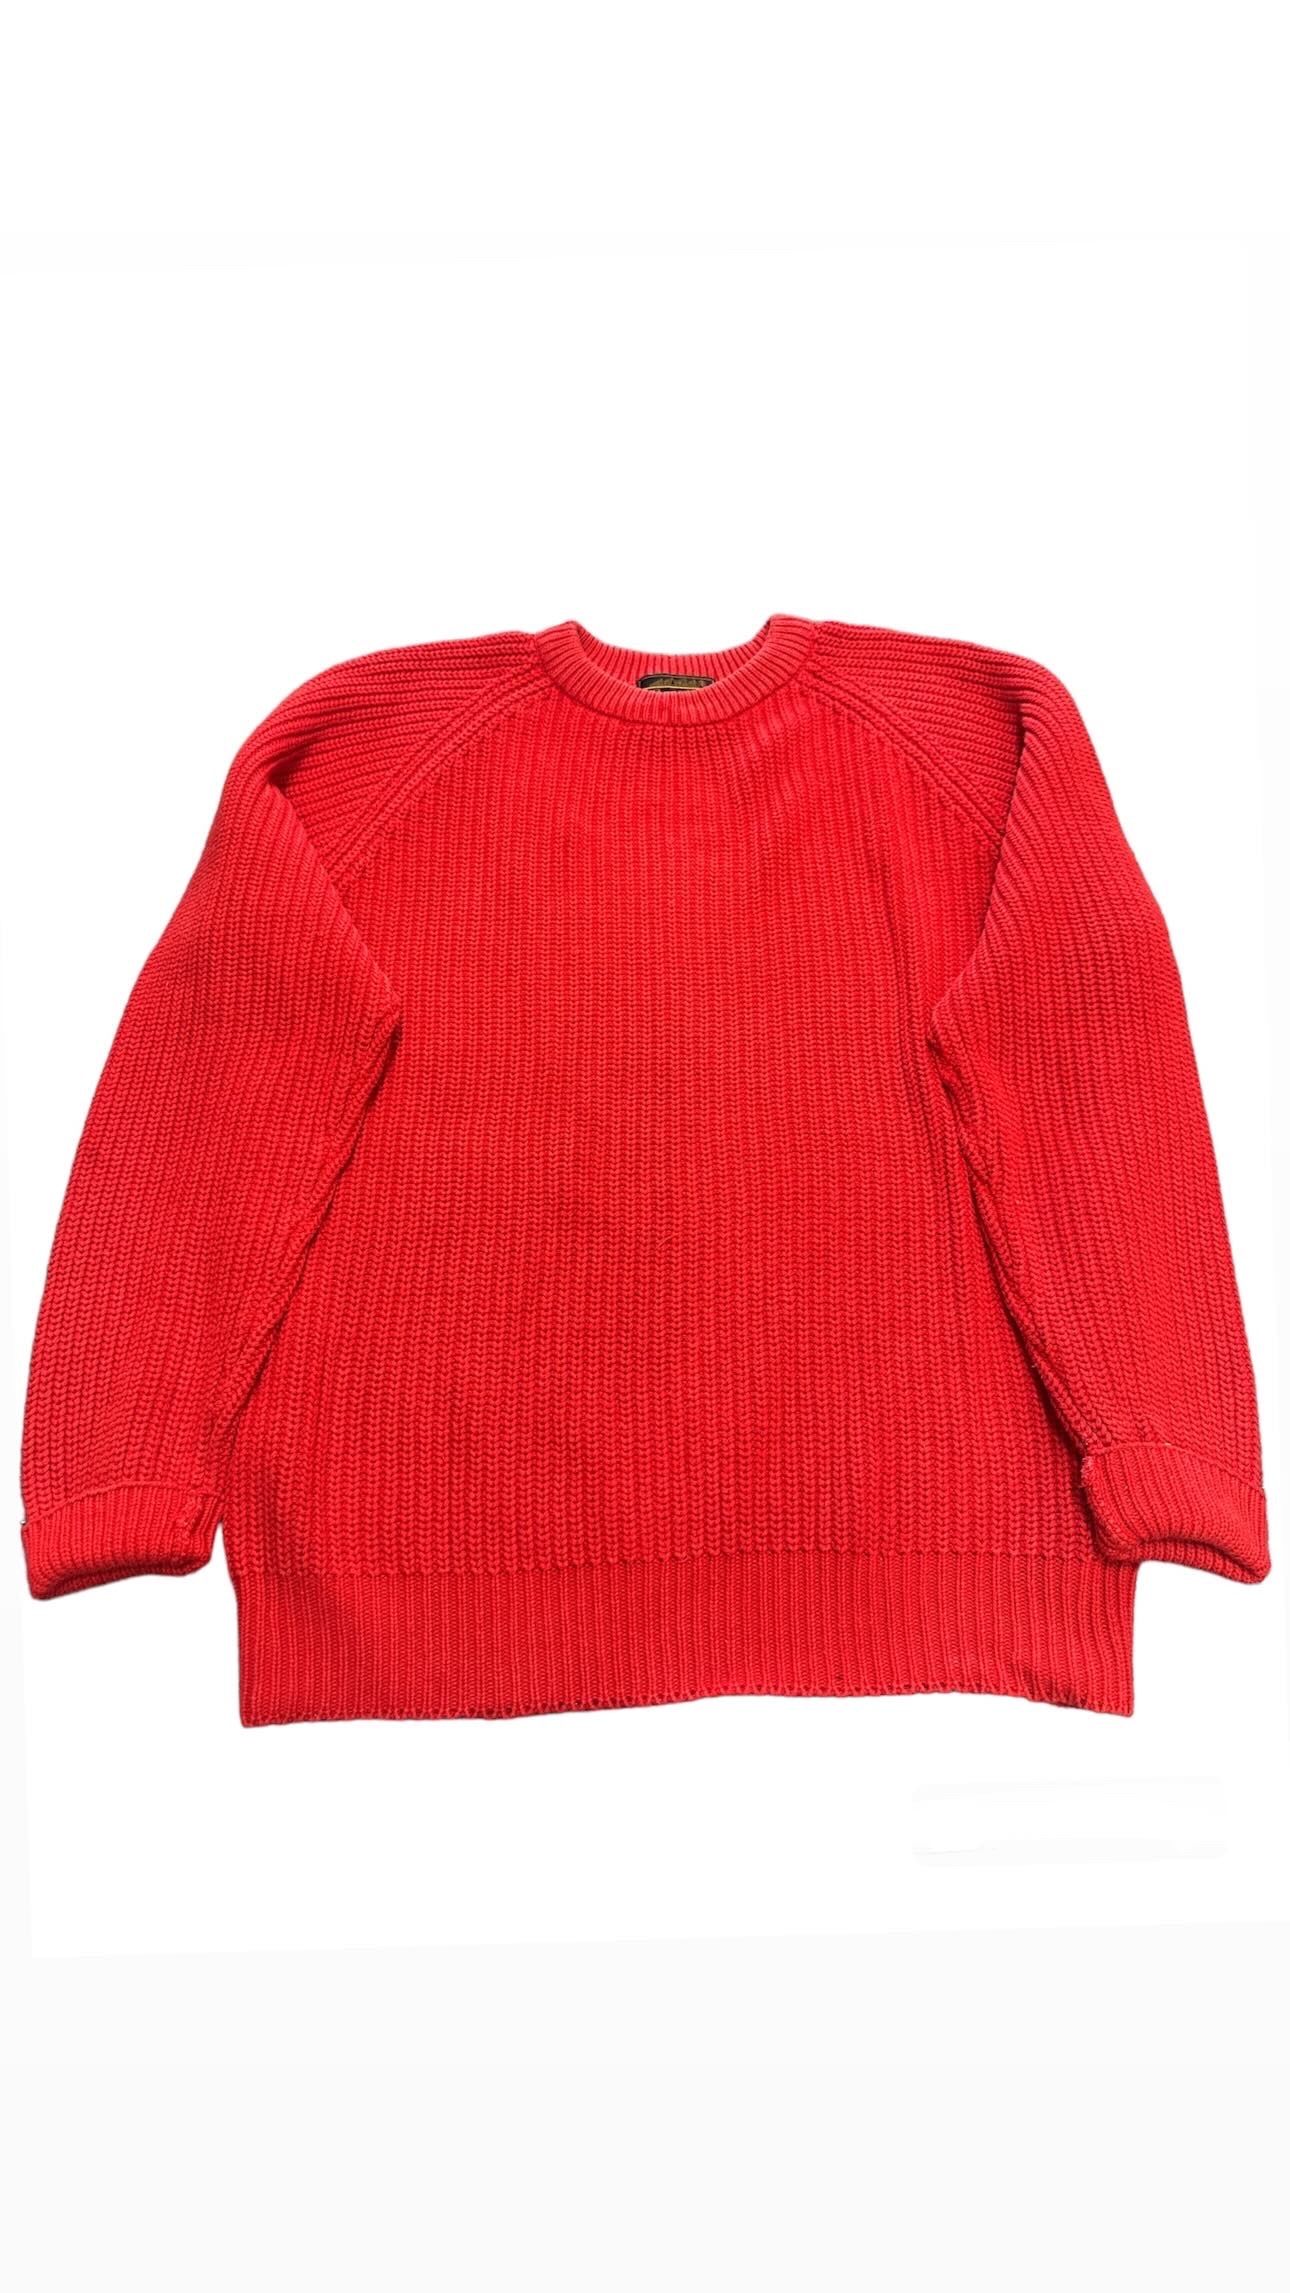 Vintage Eddie Bauer red knit sweater